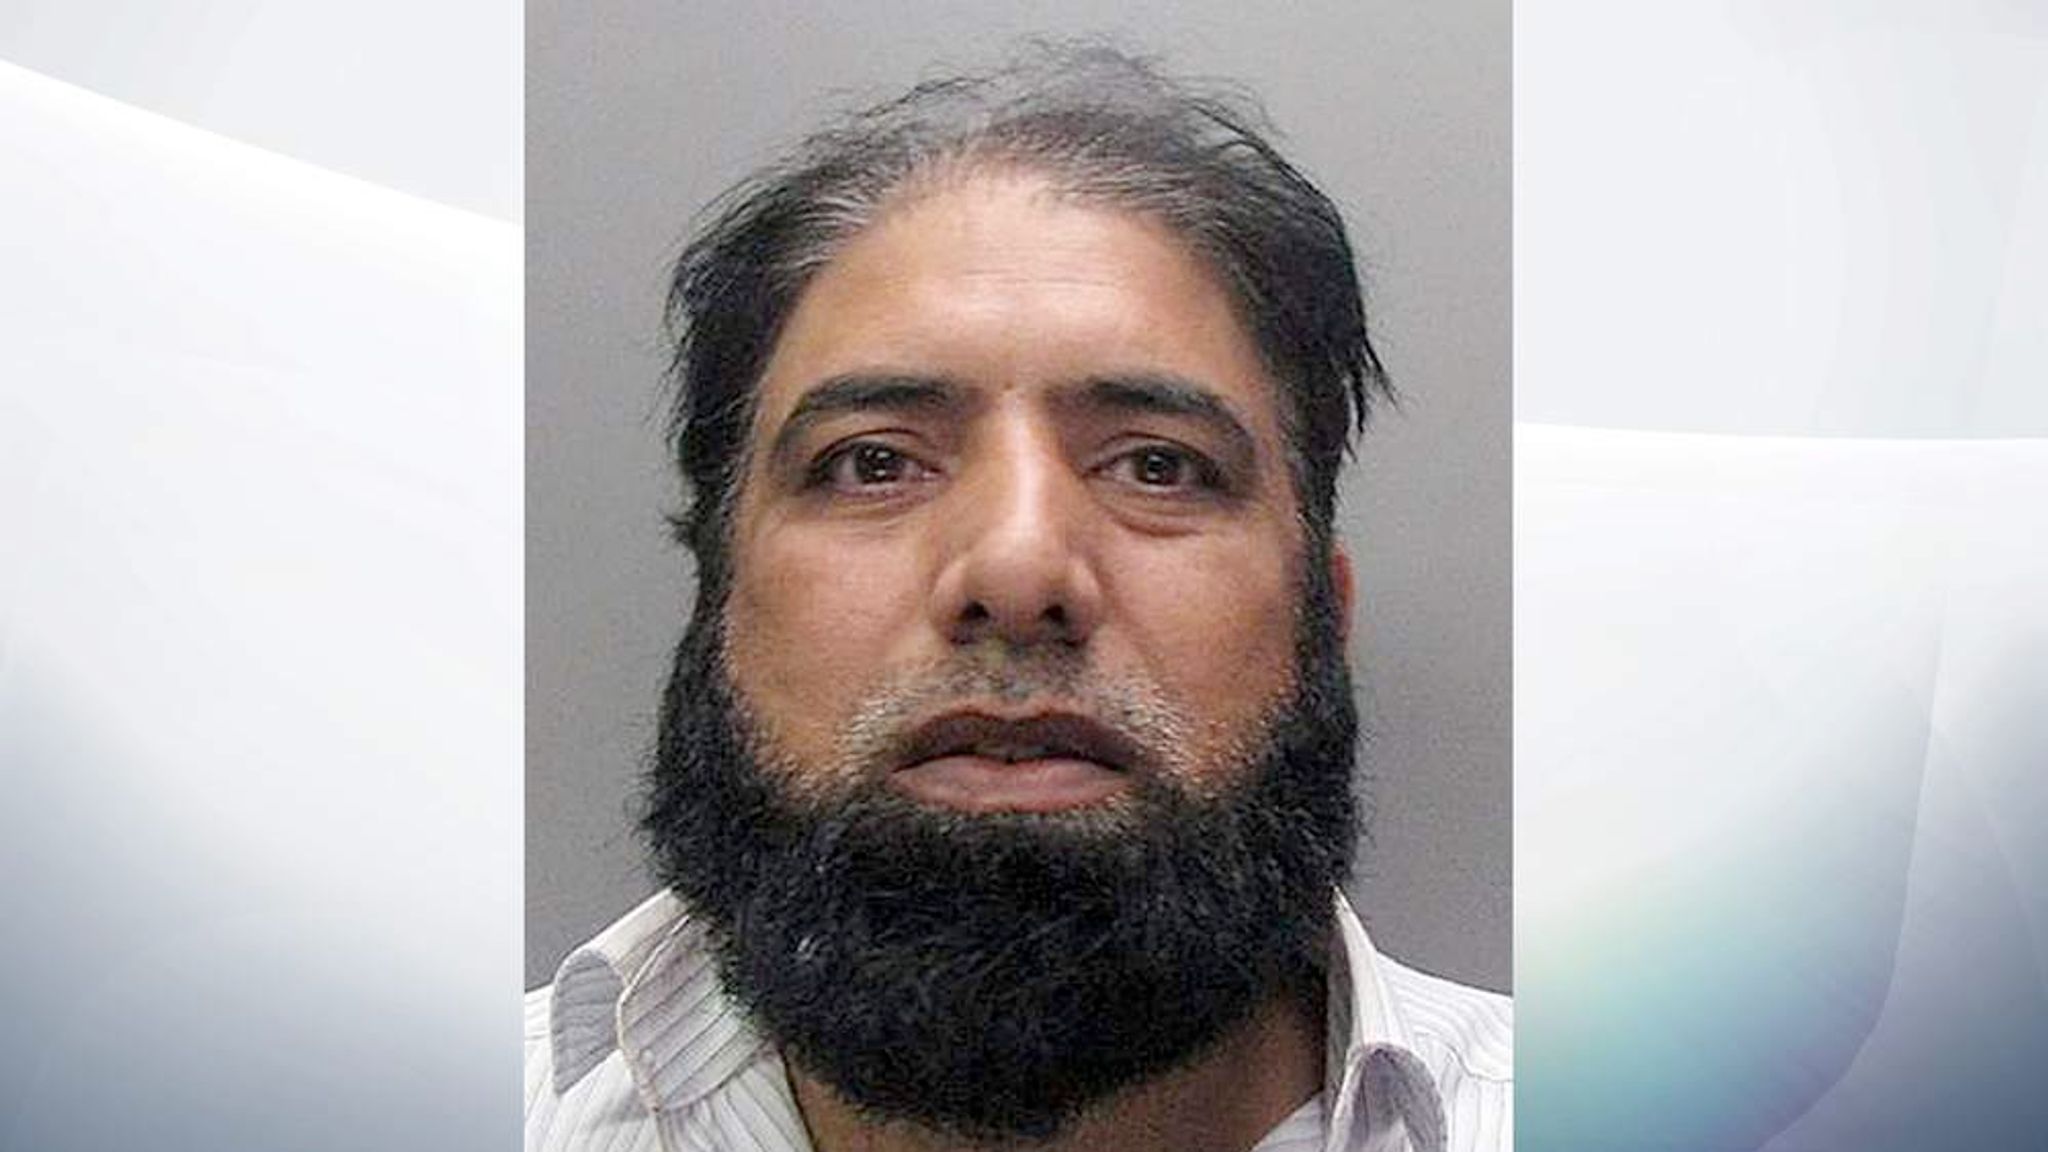 Predatory Man Jailed For Raping Girl 14 Uk News Sky News